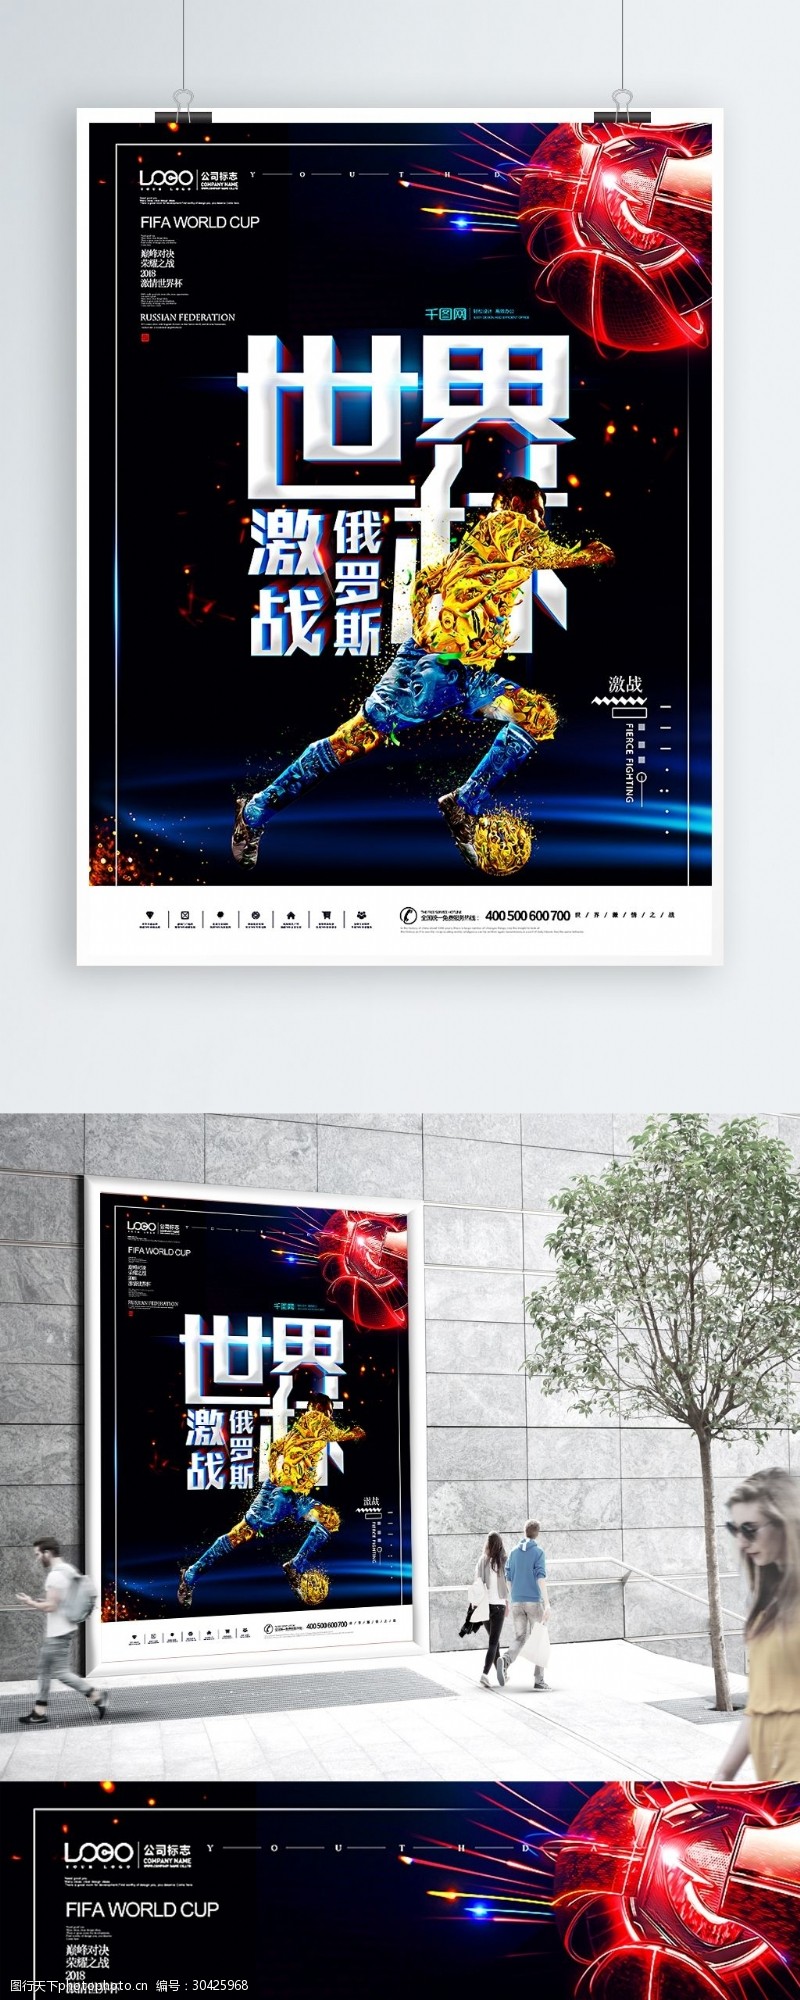 激情亚洲2018俄罗斯世界杯足球激情对决原创海报